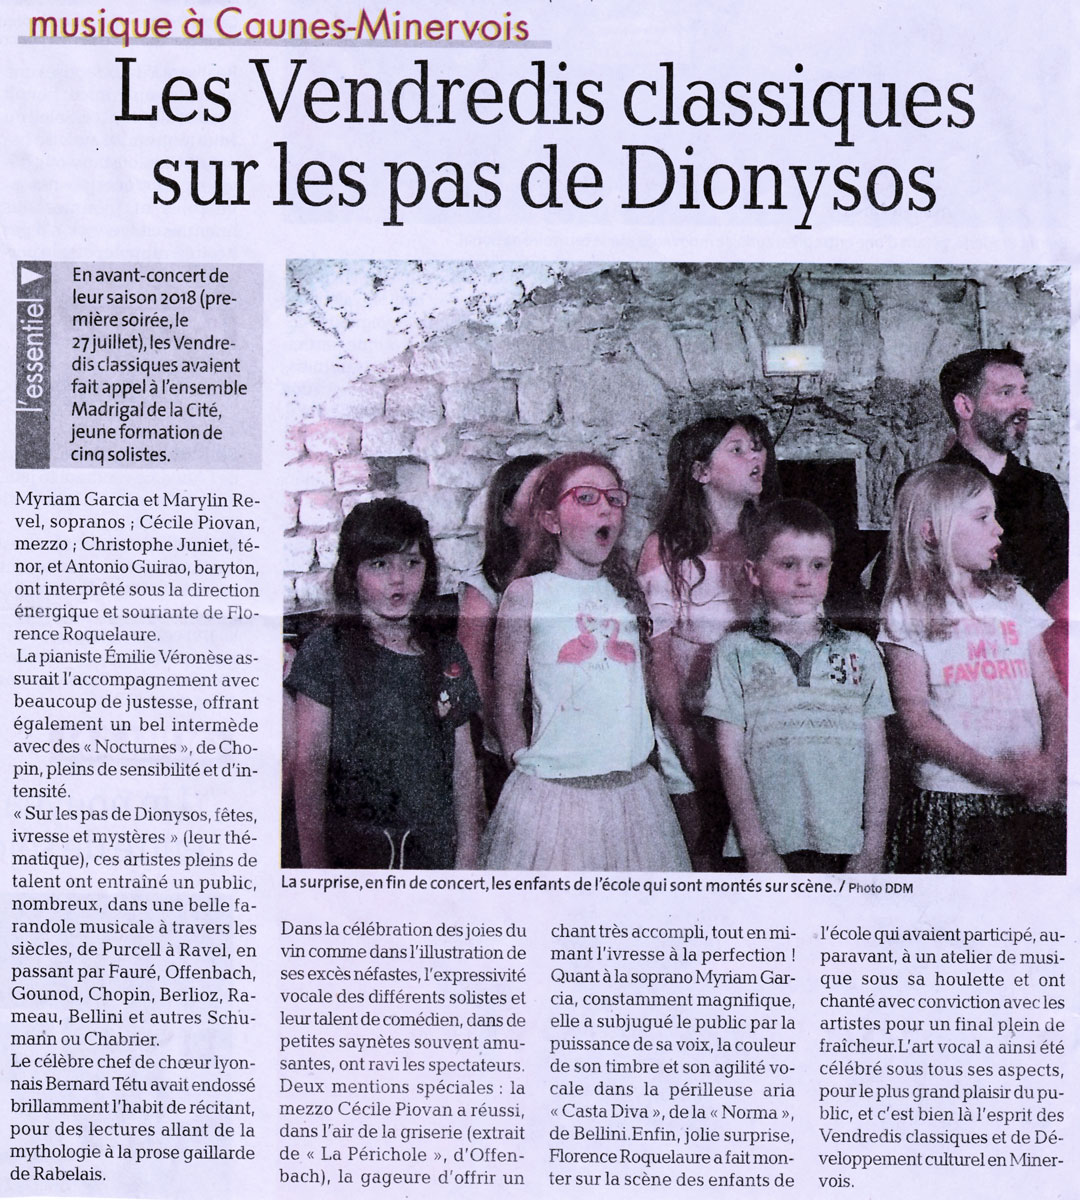 Article "Les Vendredis classiques sur les pas de Dionysos" - La Dépêche (14-06-18) - ©Madrigal de la Cité